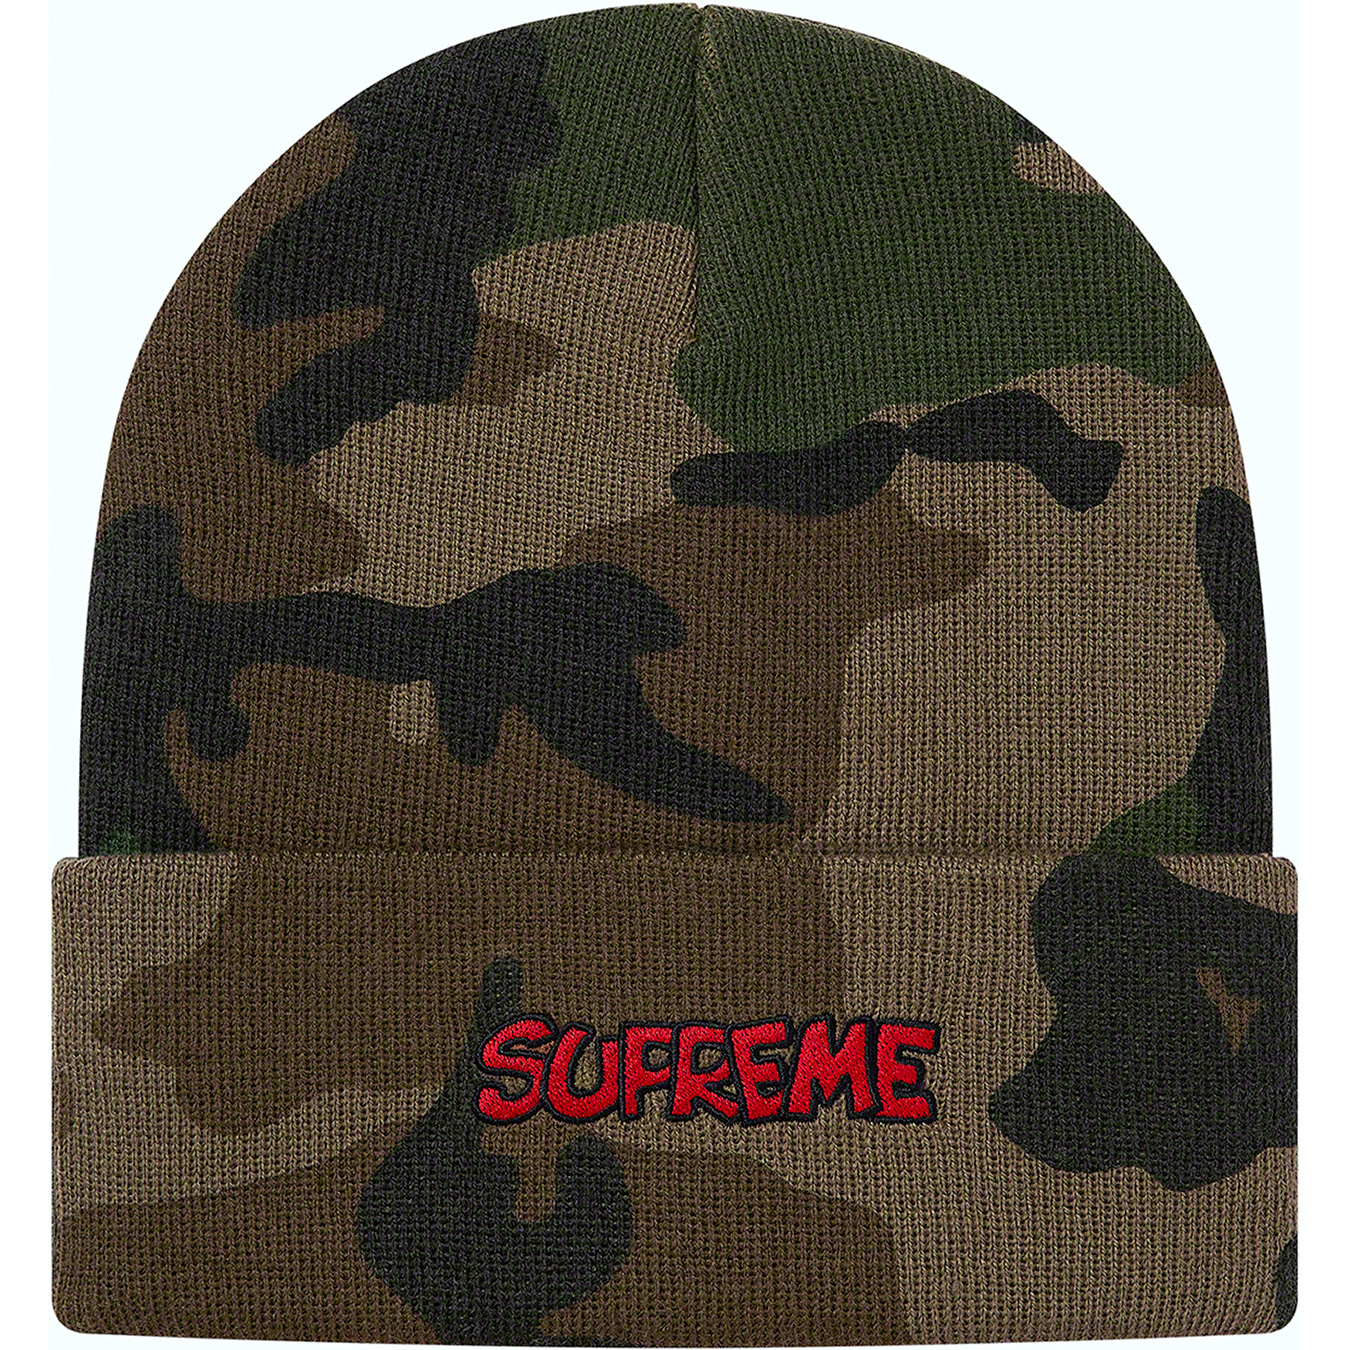 Supreme®/Smurfs™ Beanie - Supreme Community